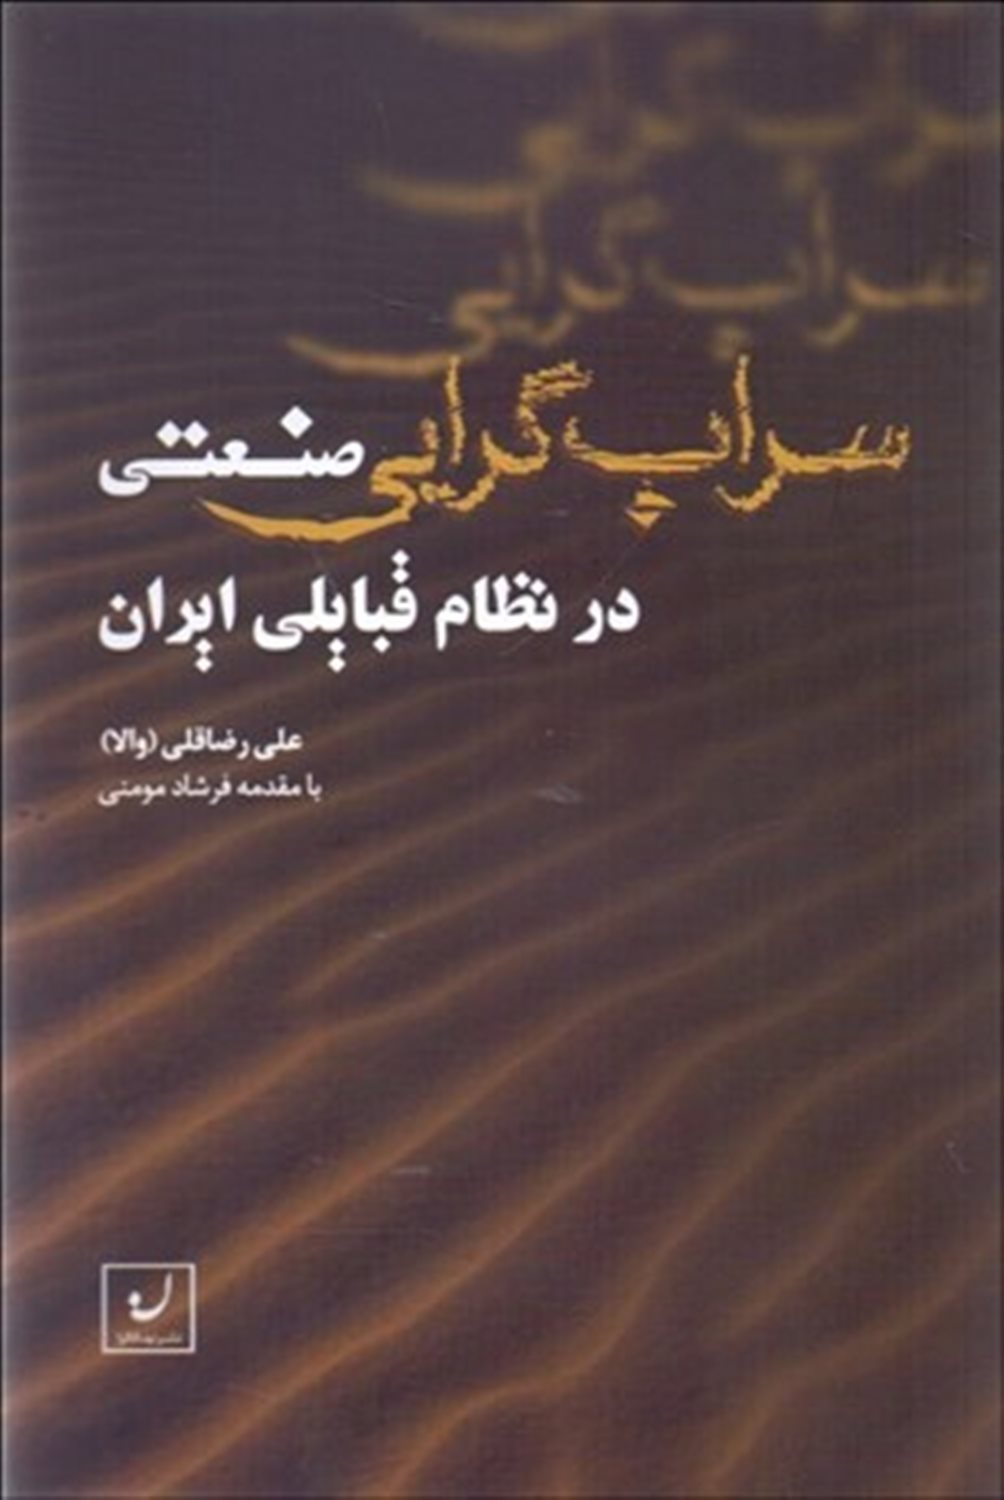  کتاب سراب گرایی صنعتی در نظام قبایلی ایران